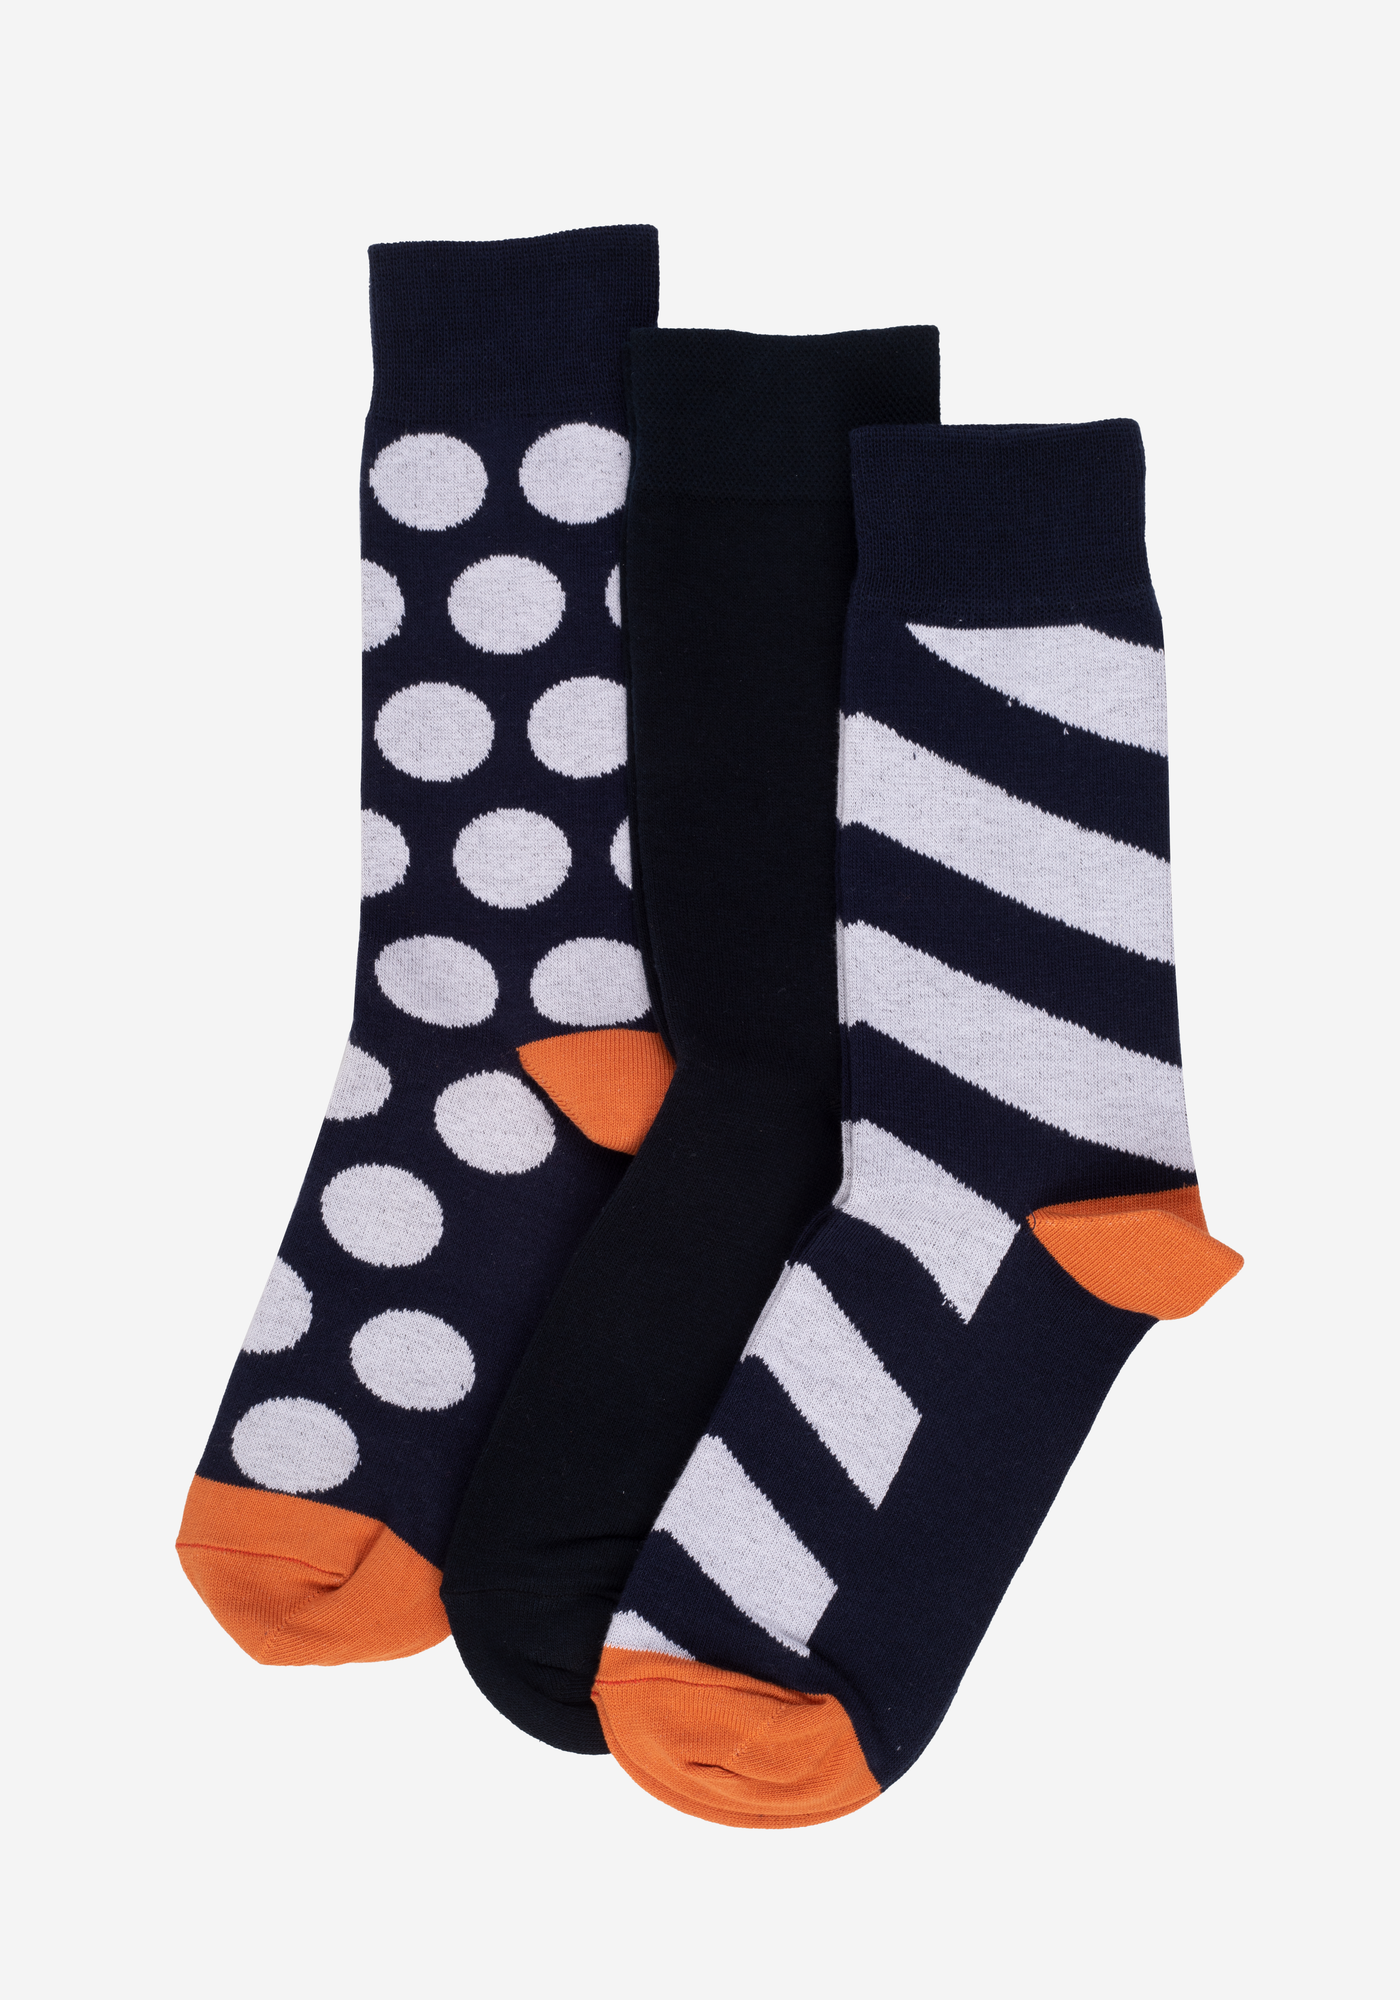 P3*1-WL021-3 / 3 Long Socks Pack